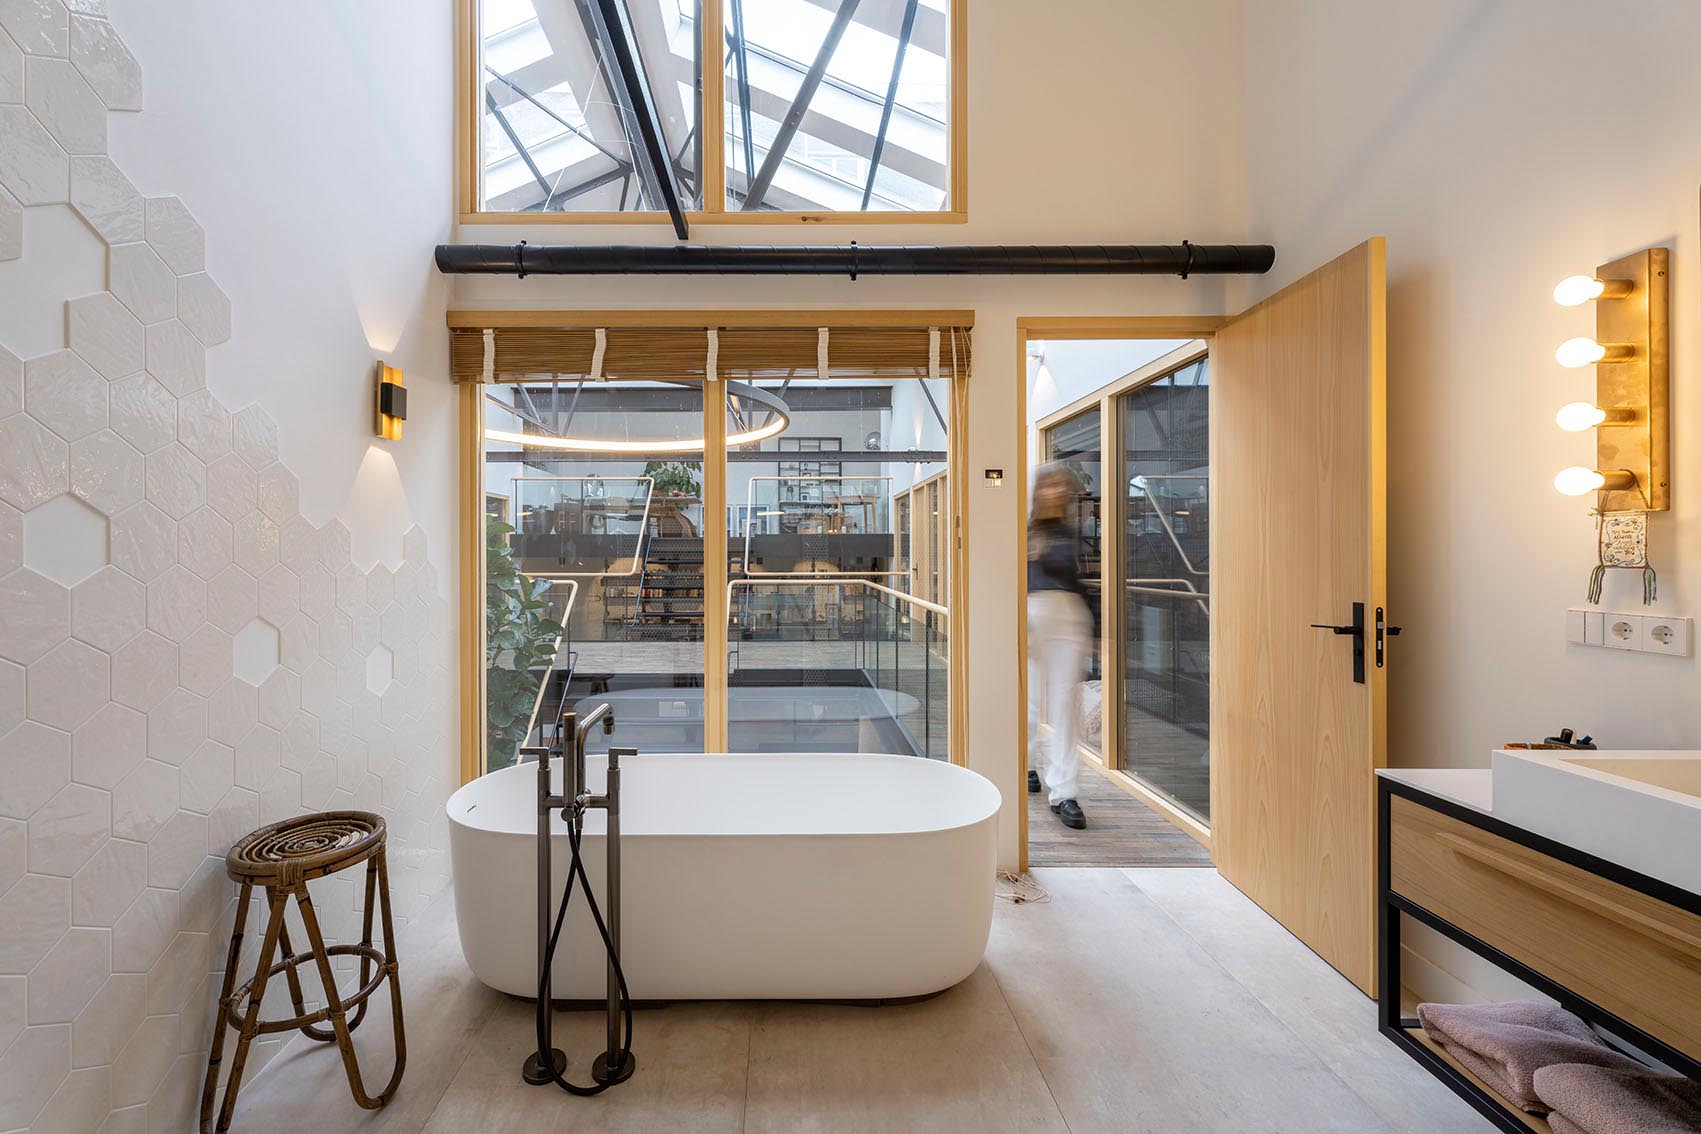 Современная ванная комната с шестиугольной плиткой и отдельно стоящей шляпой для ванны выходит на этаж ниже.